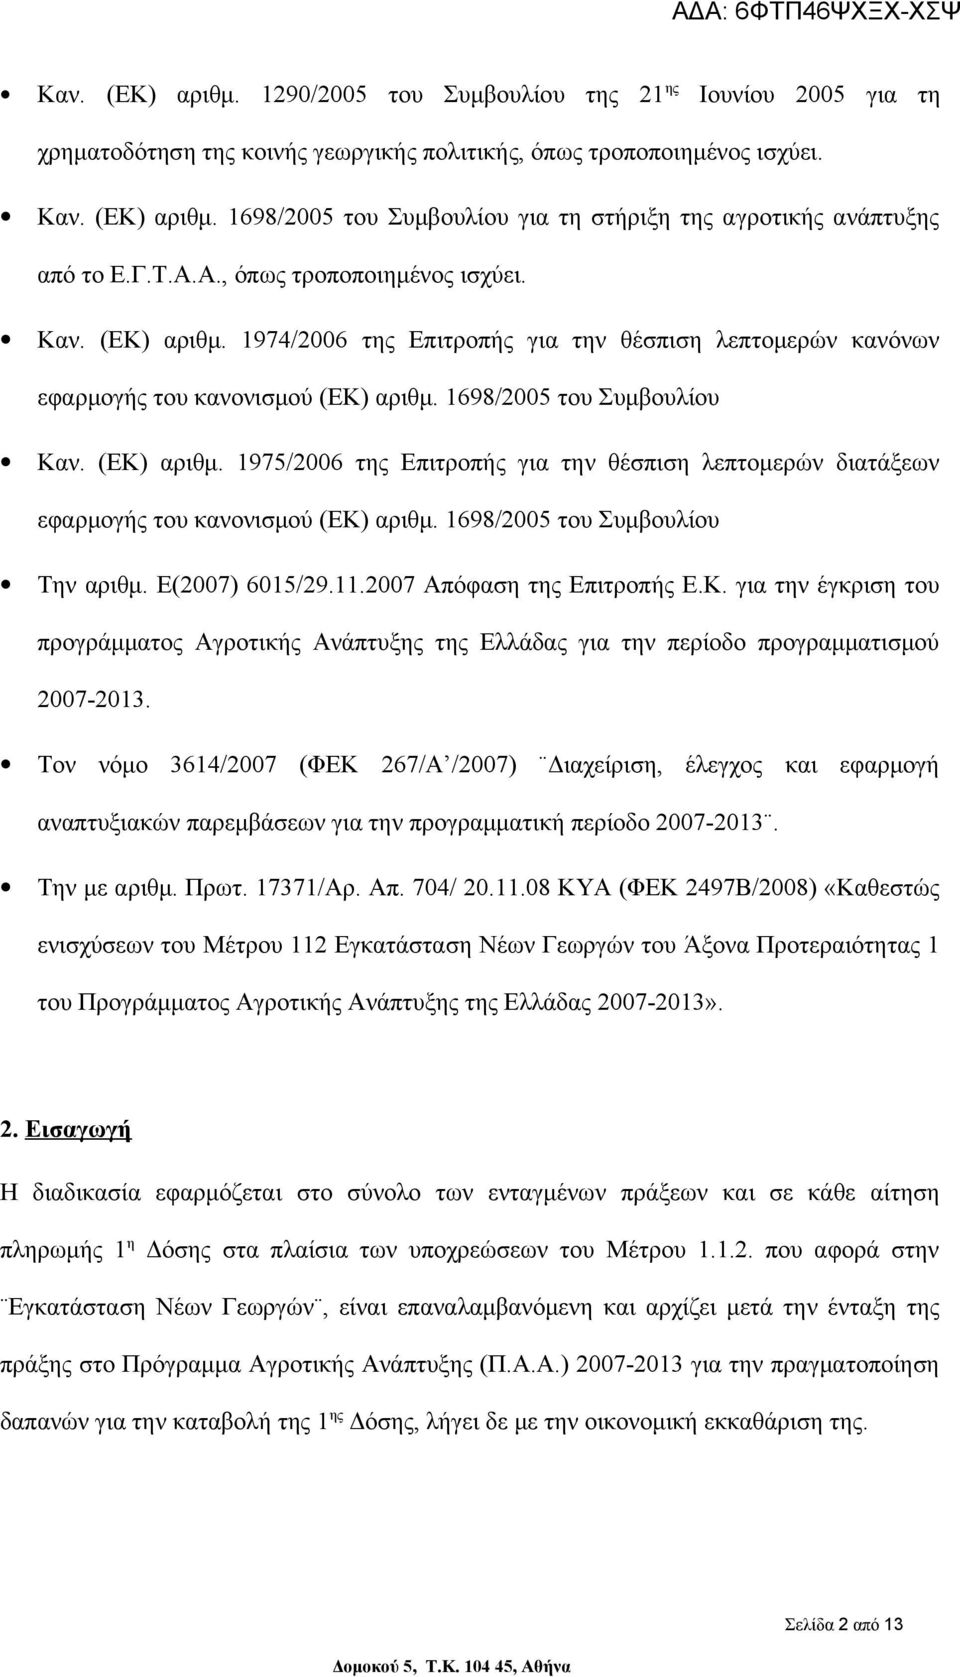 1698/2005 του Συμβουλίου Την αριθμ. Ε(2007) 6015/29.11.2007 Απόφαση της Επιτροπής Ε.Κ. για την έγκριση του προγράμματος Αγροτικής Ανάπτυξης της Ελλάδας για την περίοδο προγραμματισμού 2007-2013.